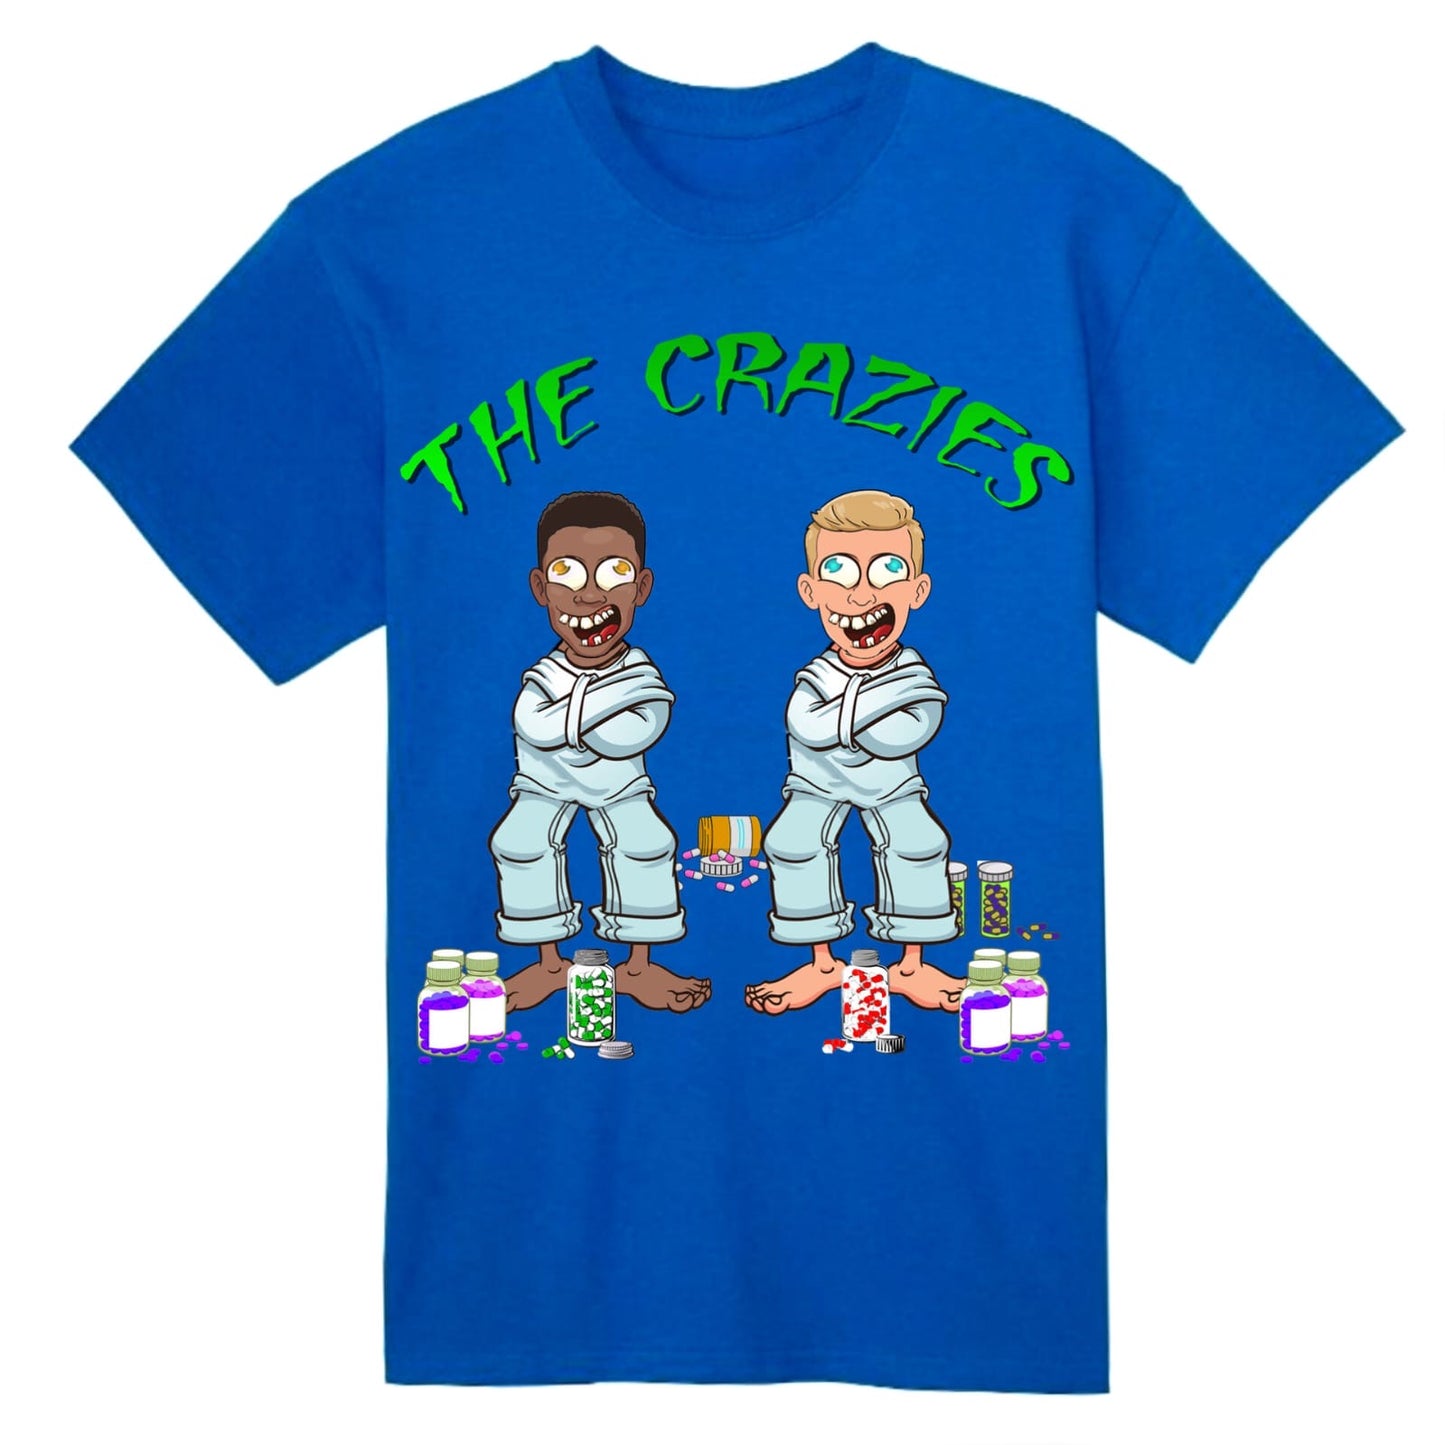 The Crazies short sleeve T-Shirt